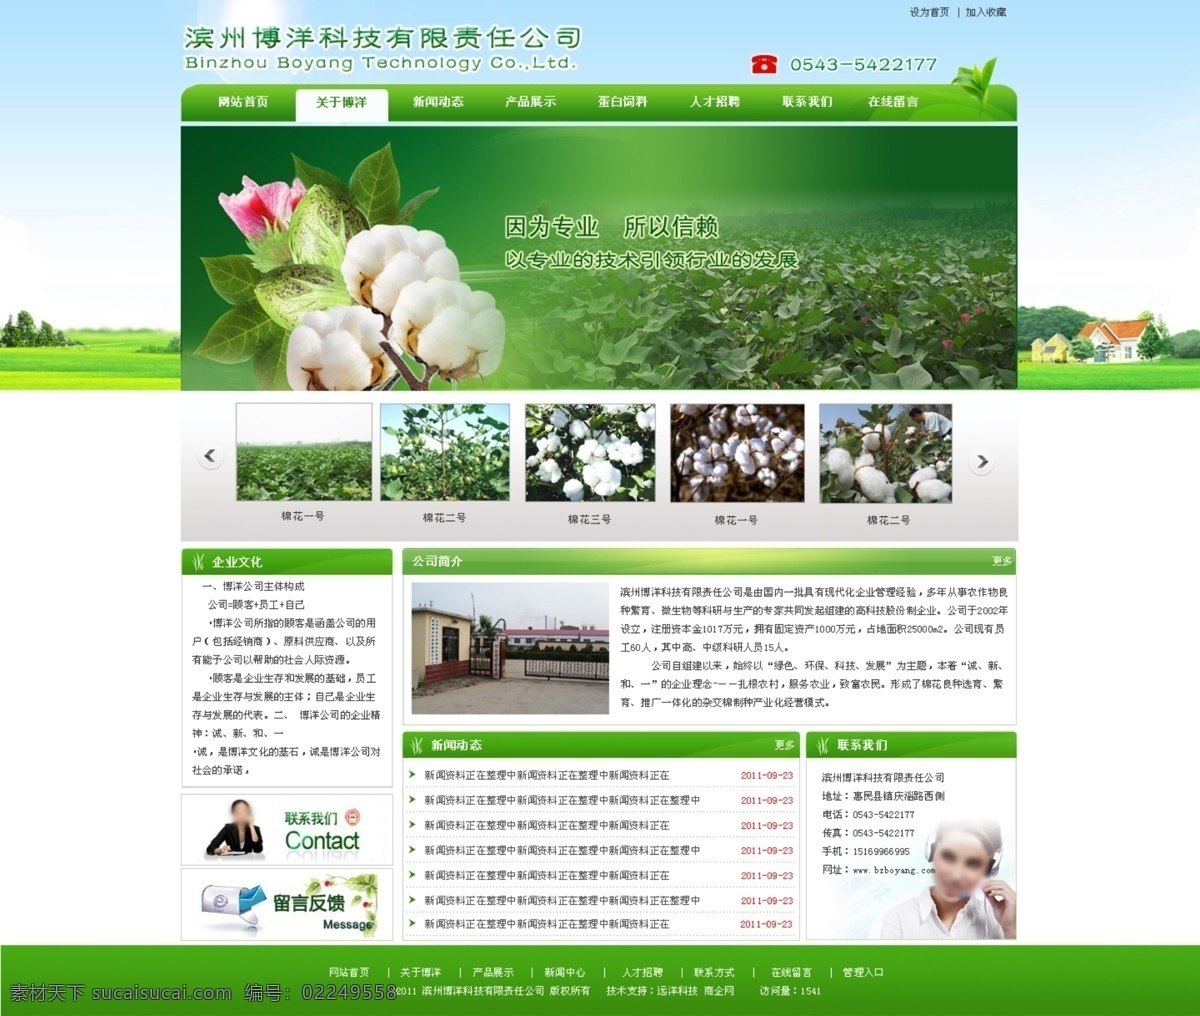 绿色 绿色模板 棉花 网页模板 源文件 中文模版 农业模板 模板 模板下载 绿色农业模板 育苗 网页素材